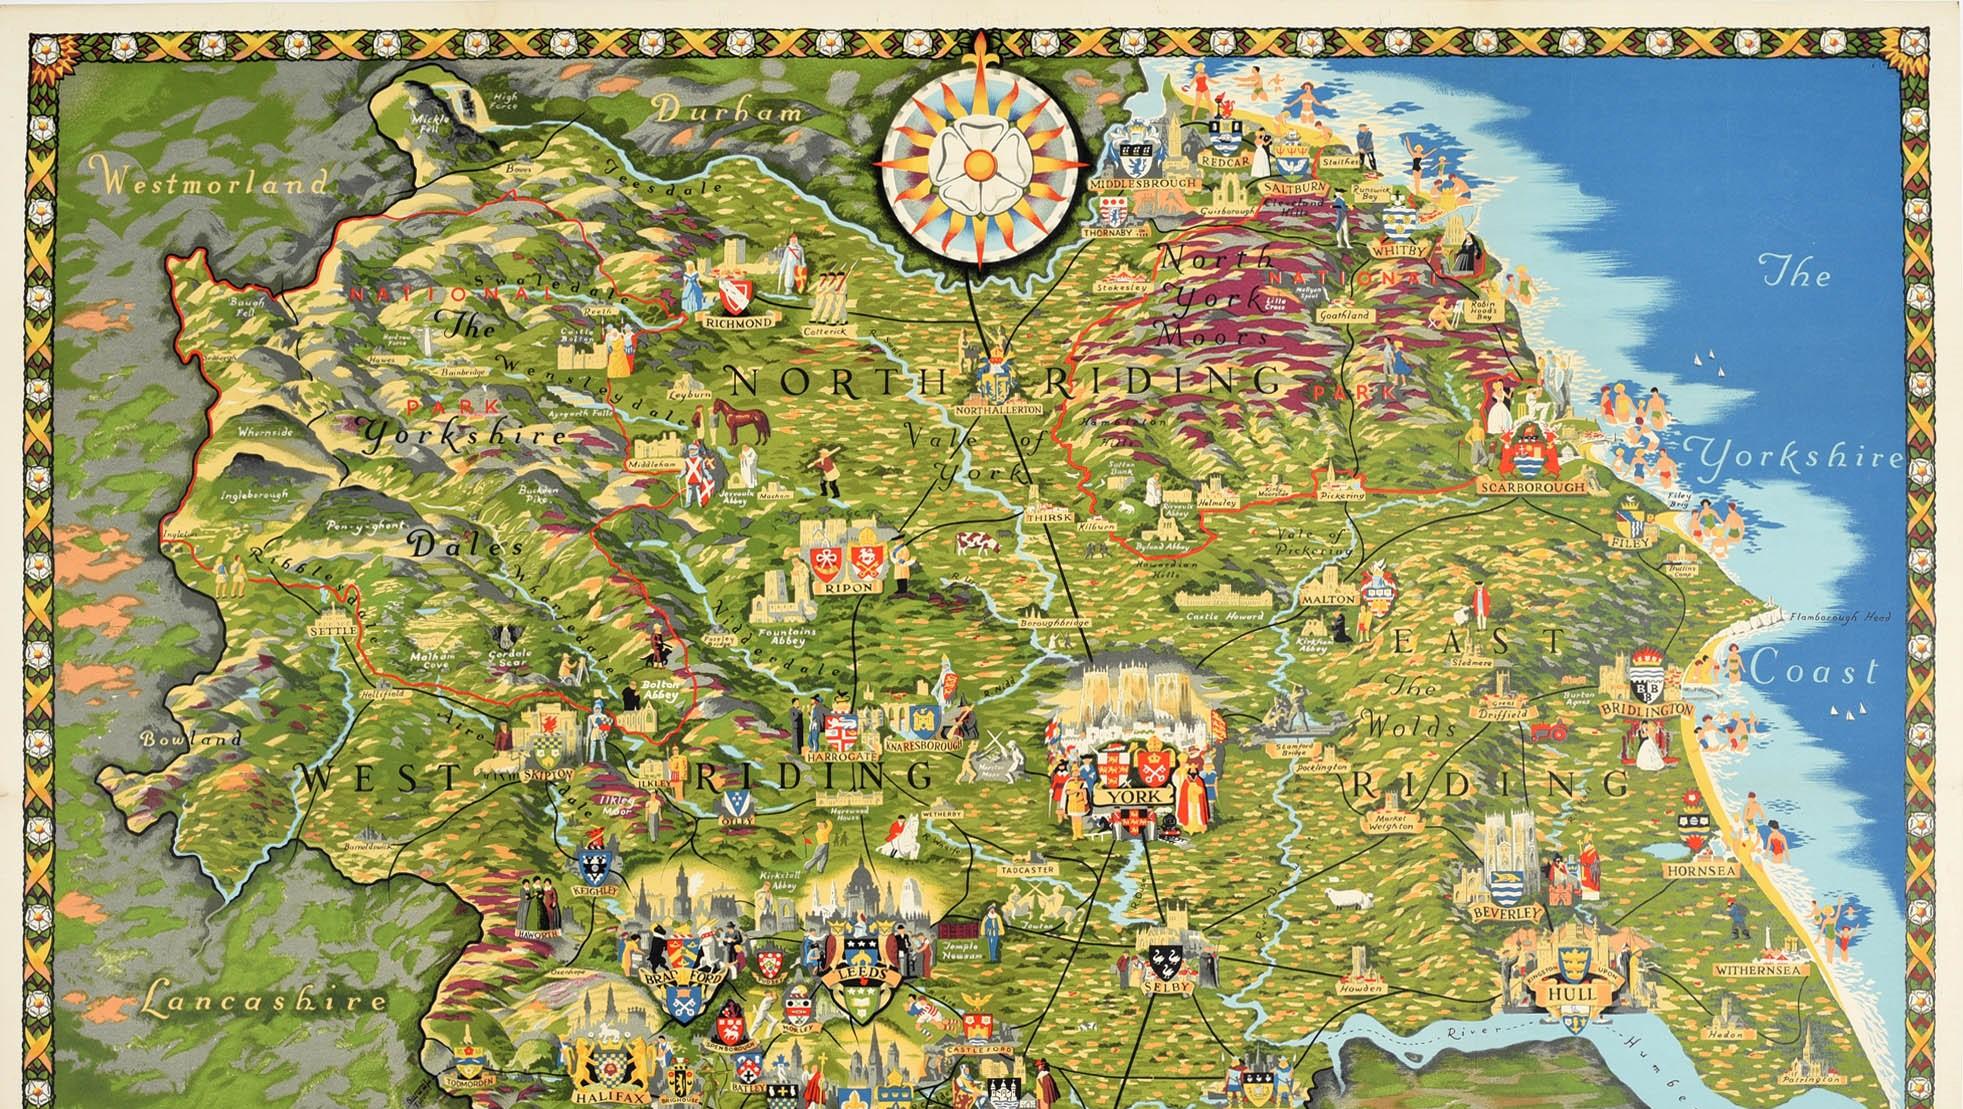 Originelles Zugreiseposter - Pictorial Map of Yorkshire von British Railways - mit einer farbenfrohen und detaillierten illustrierten Karte der historischen Grafschaft Yorkshire in Nordengland mit den Wappen der verschiedenen Städte, darunter York,